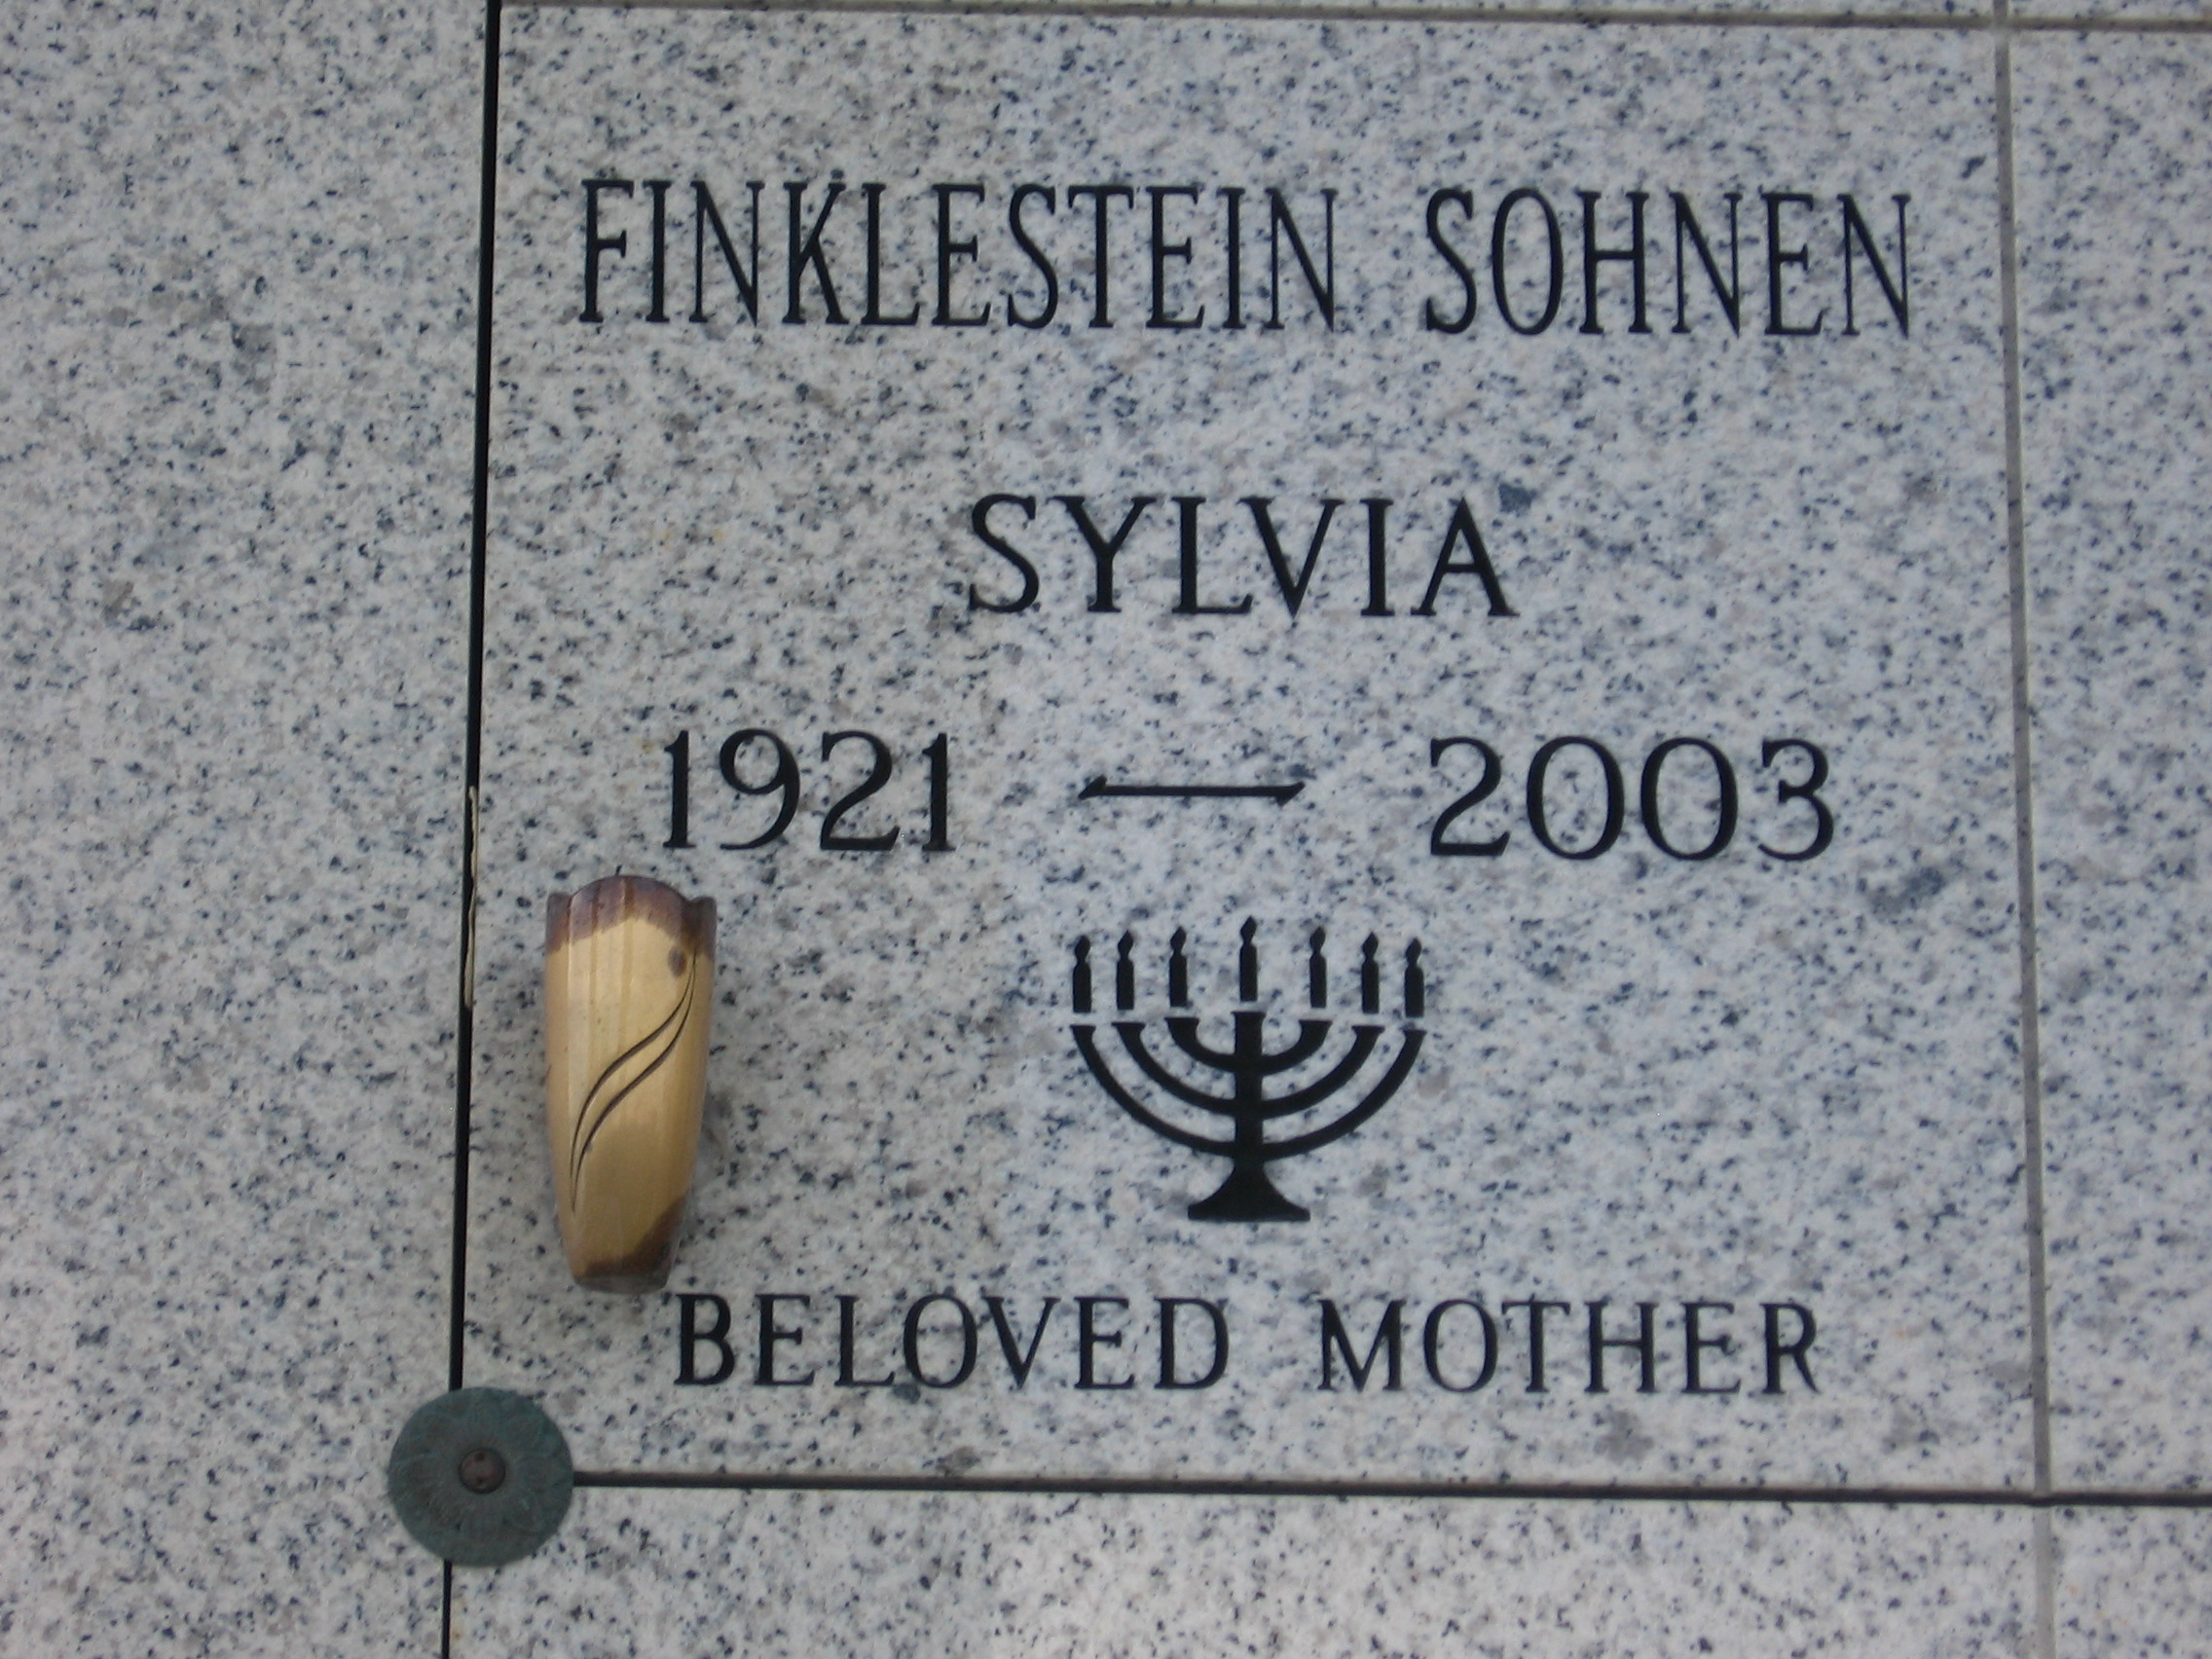 Sylvia Finklestein Sohnen